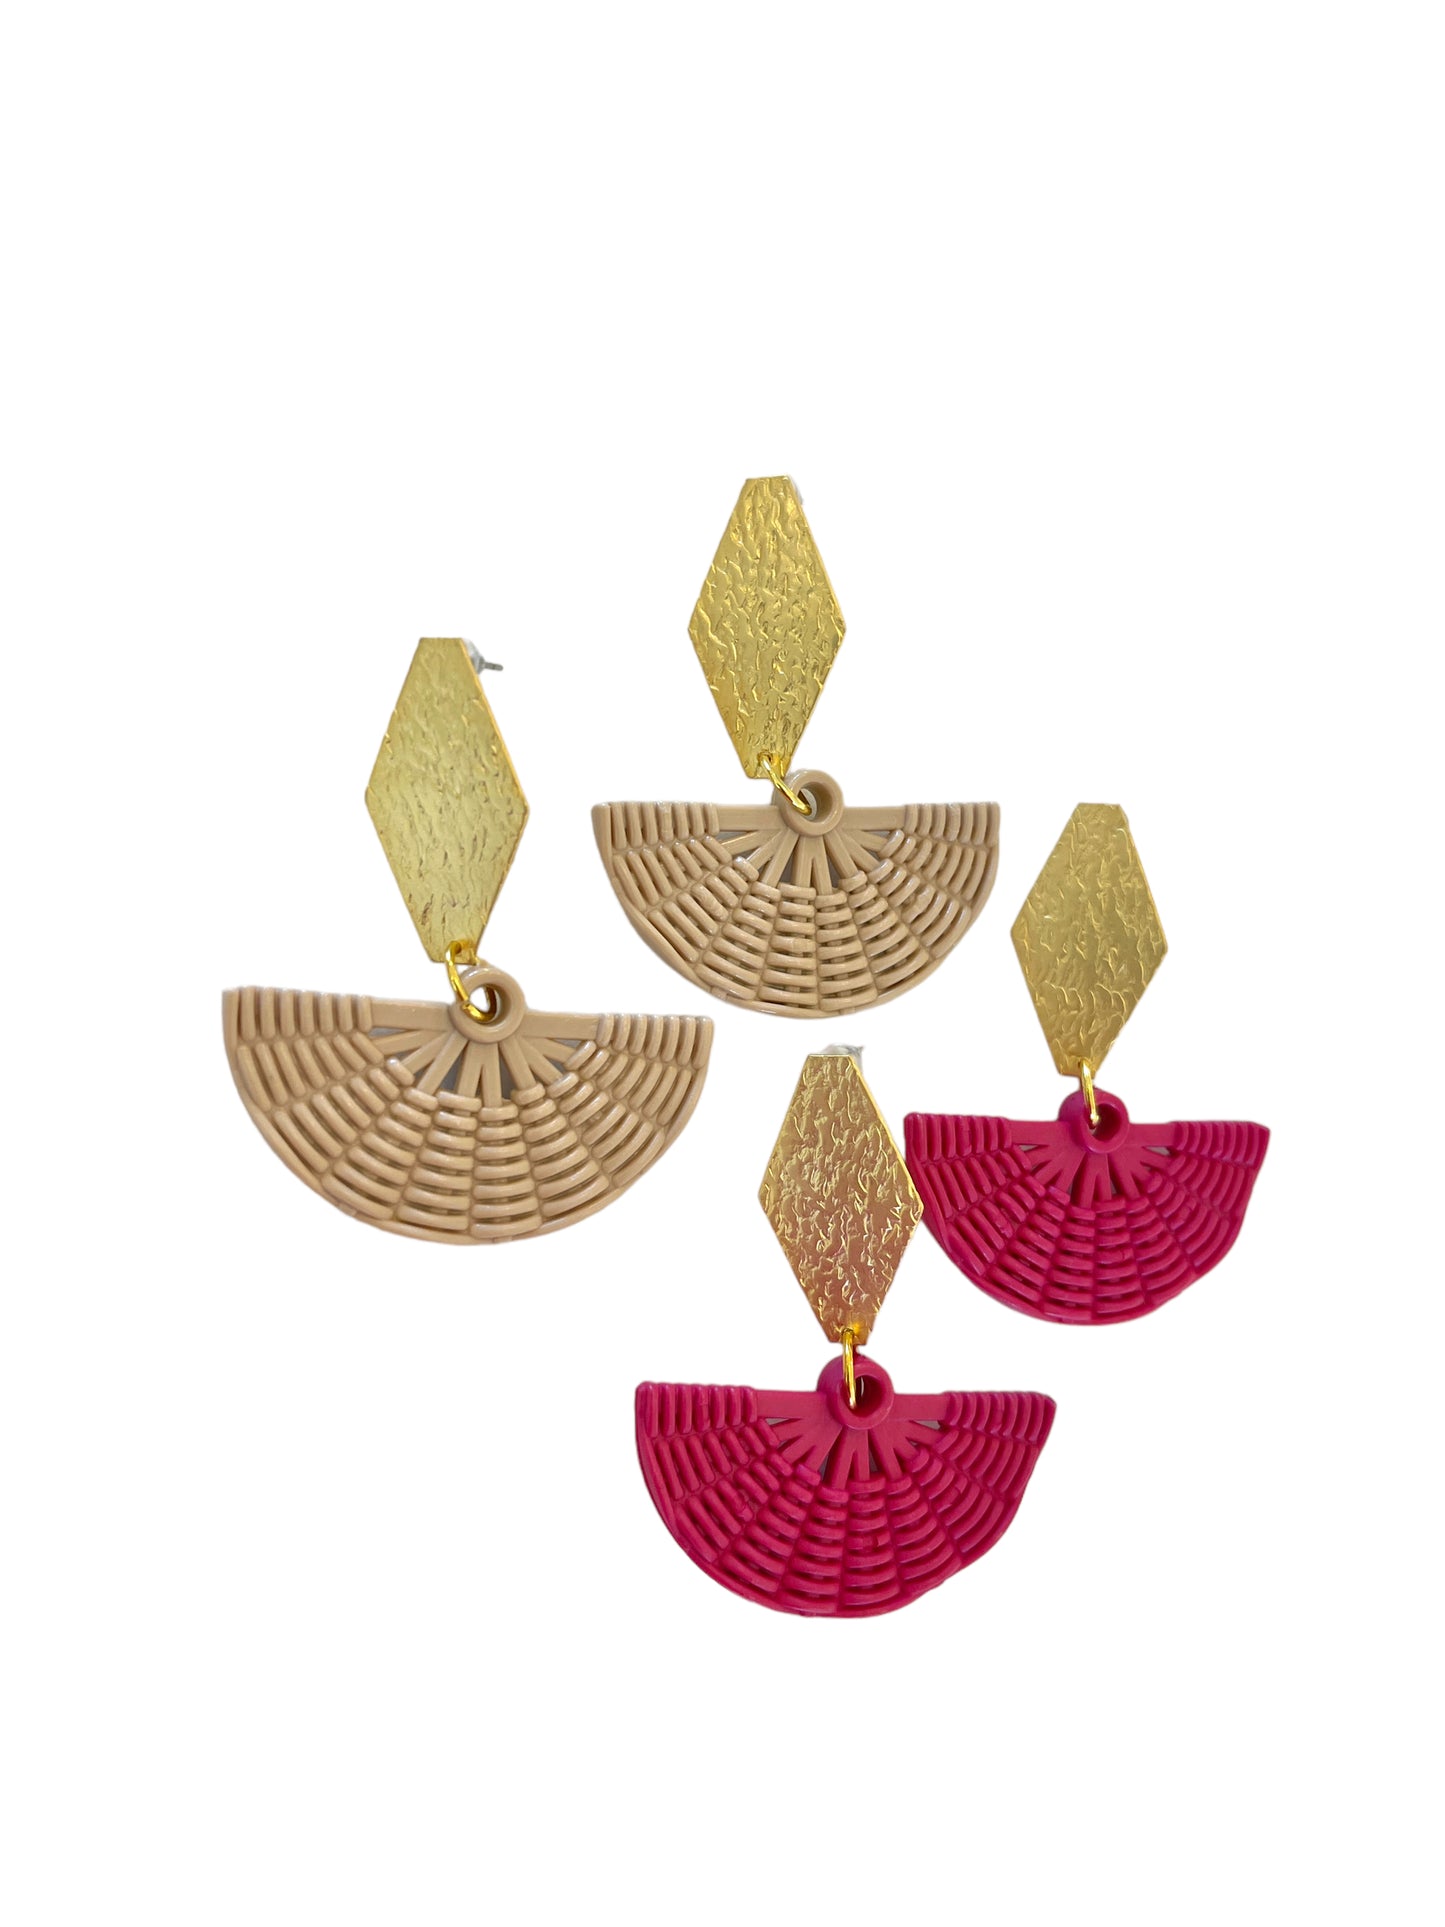 Rattan Basket Earrings